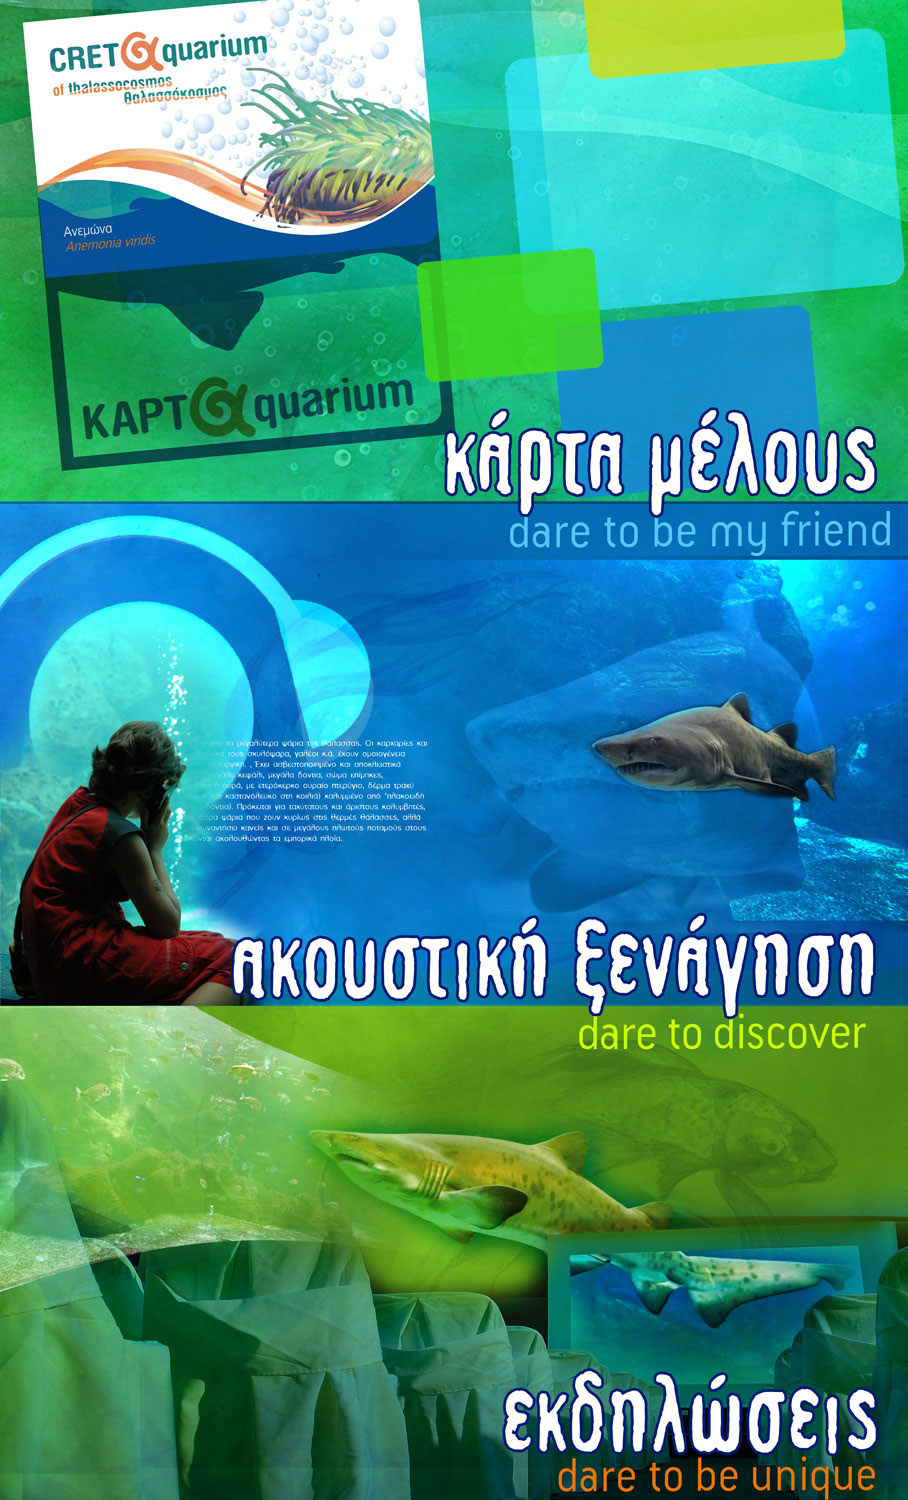 aquarium Crete Greece fish hmrc